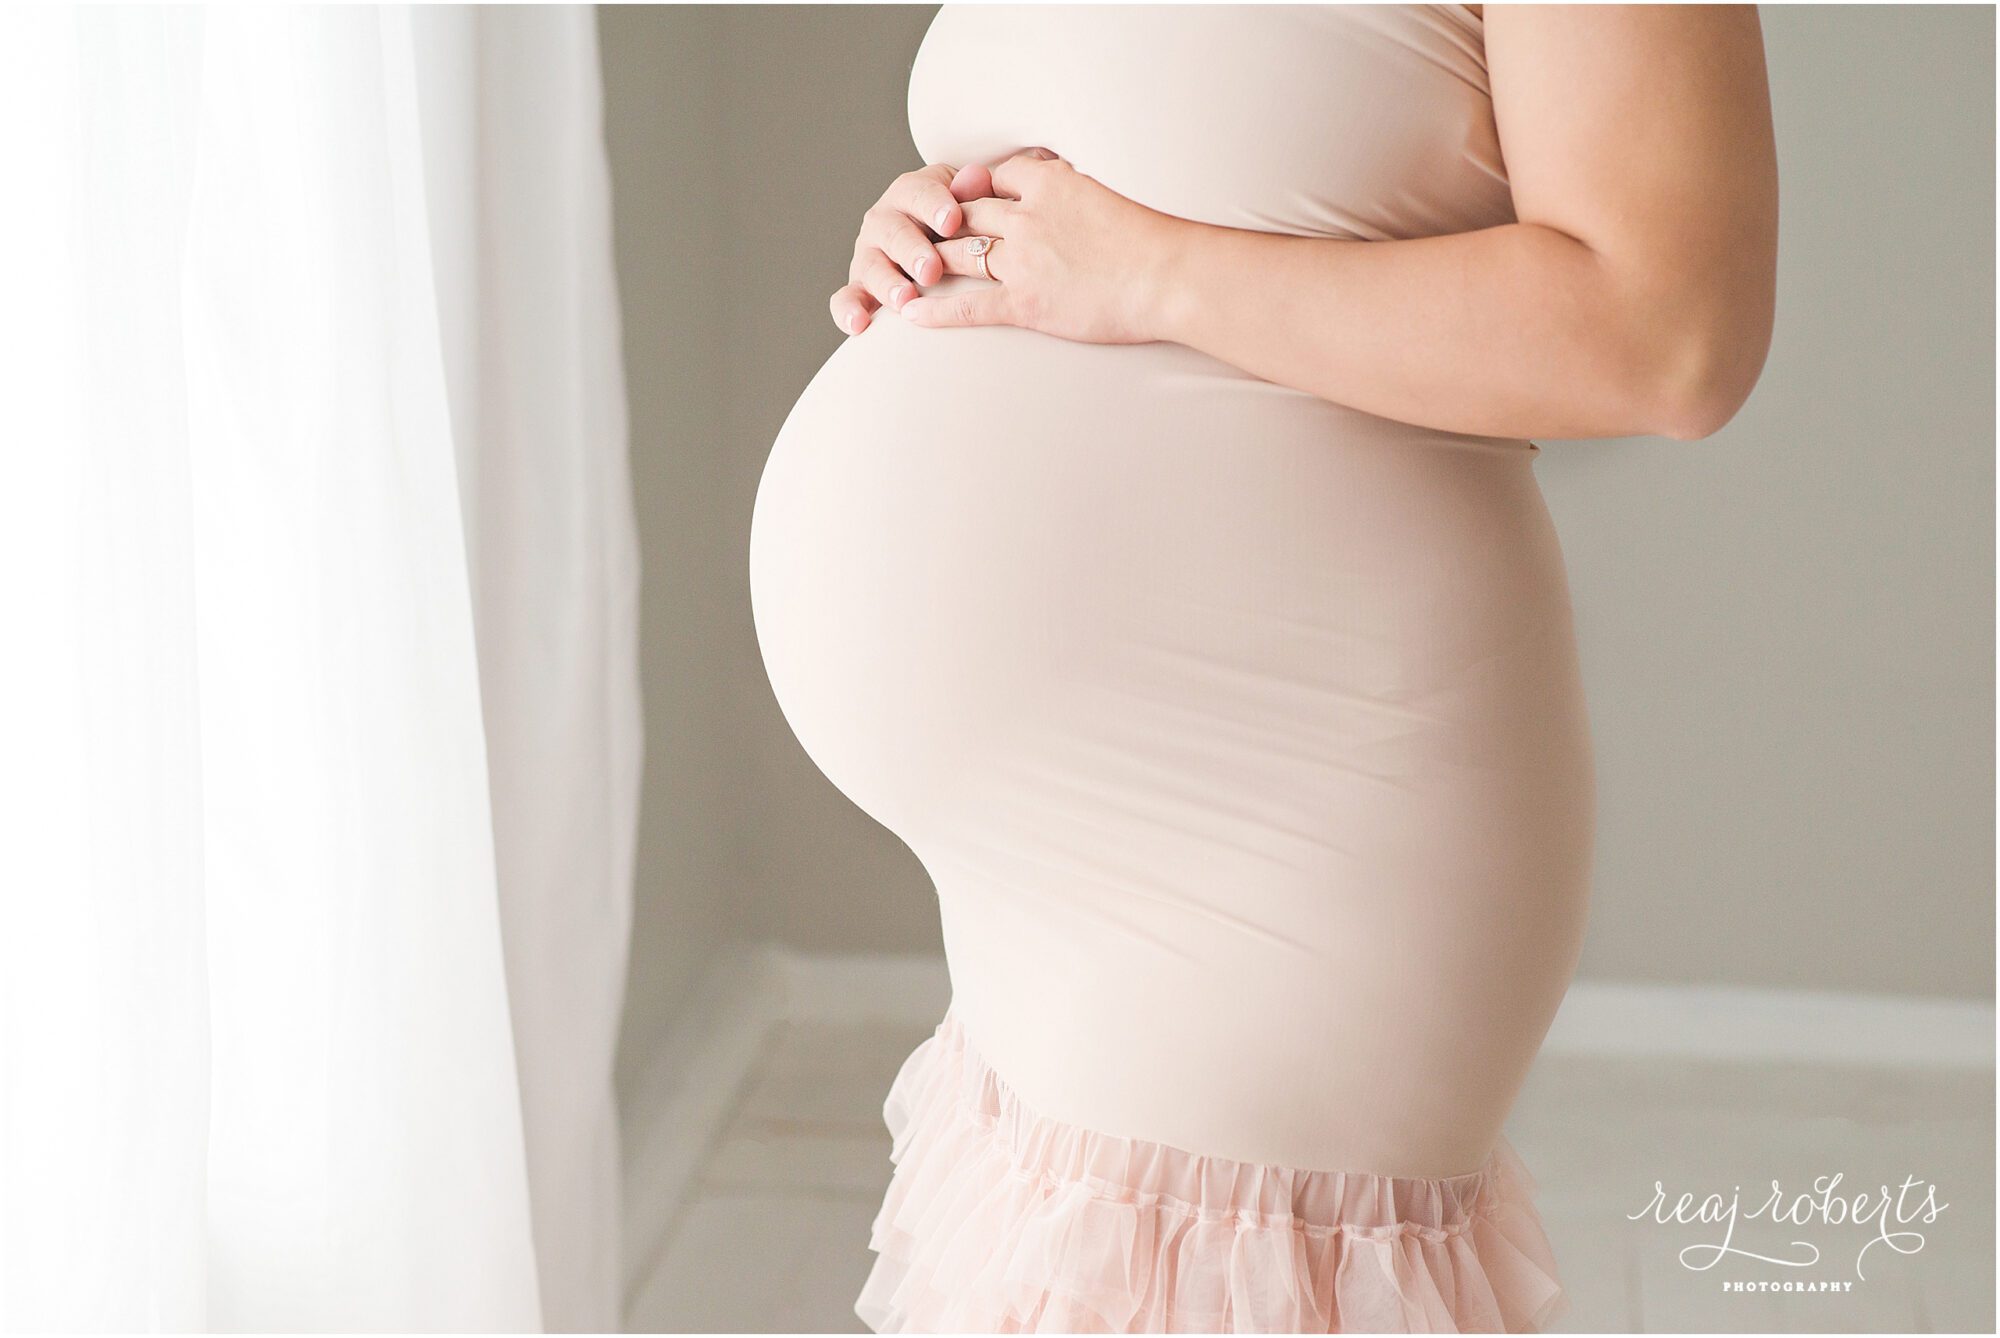 Elegant Maternity Photos | Chandler, AZ | Reaj Roberts Photography